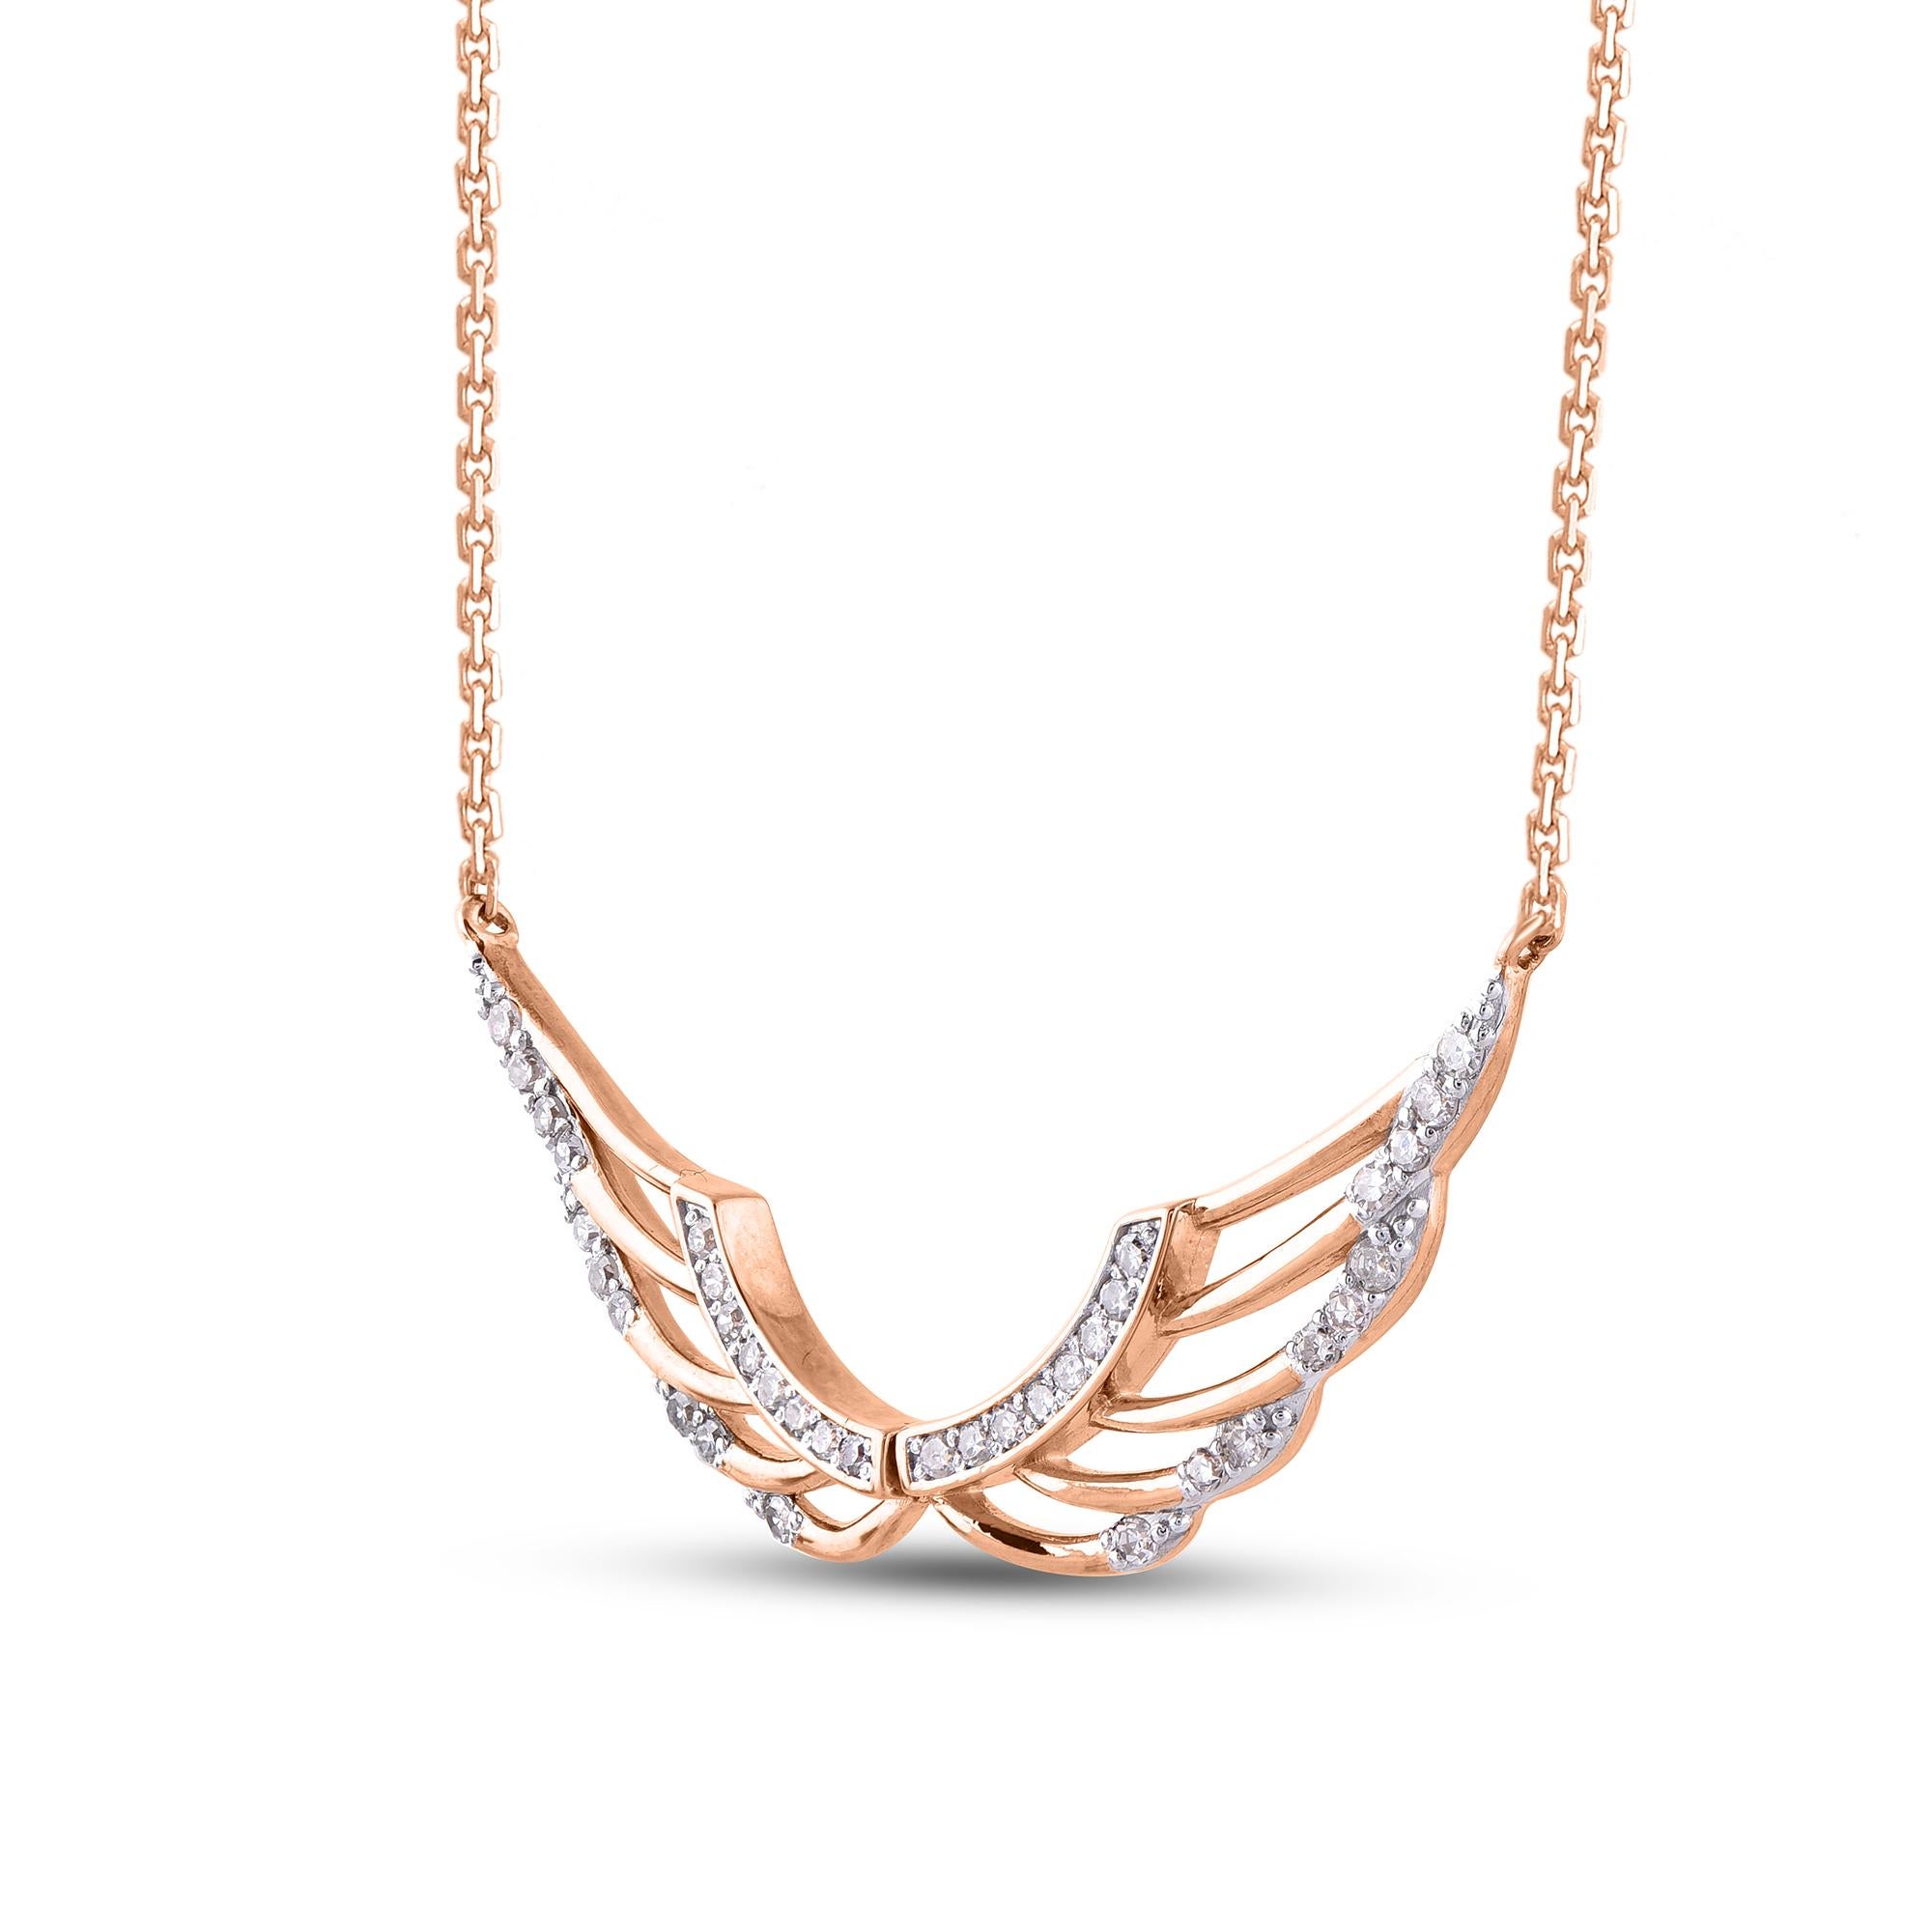 Ce pendentif en forme d'aile d'ange en diamant est une source de charme et d'inspiration. Elle est ornée de 36 diamants ronds de qualité HI/I2 sertis à l'intérieur d'une monture en or rose 14 carats, réalisée par nos artisans. Ce pendentif est